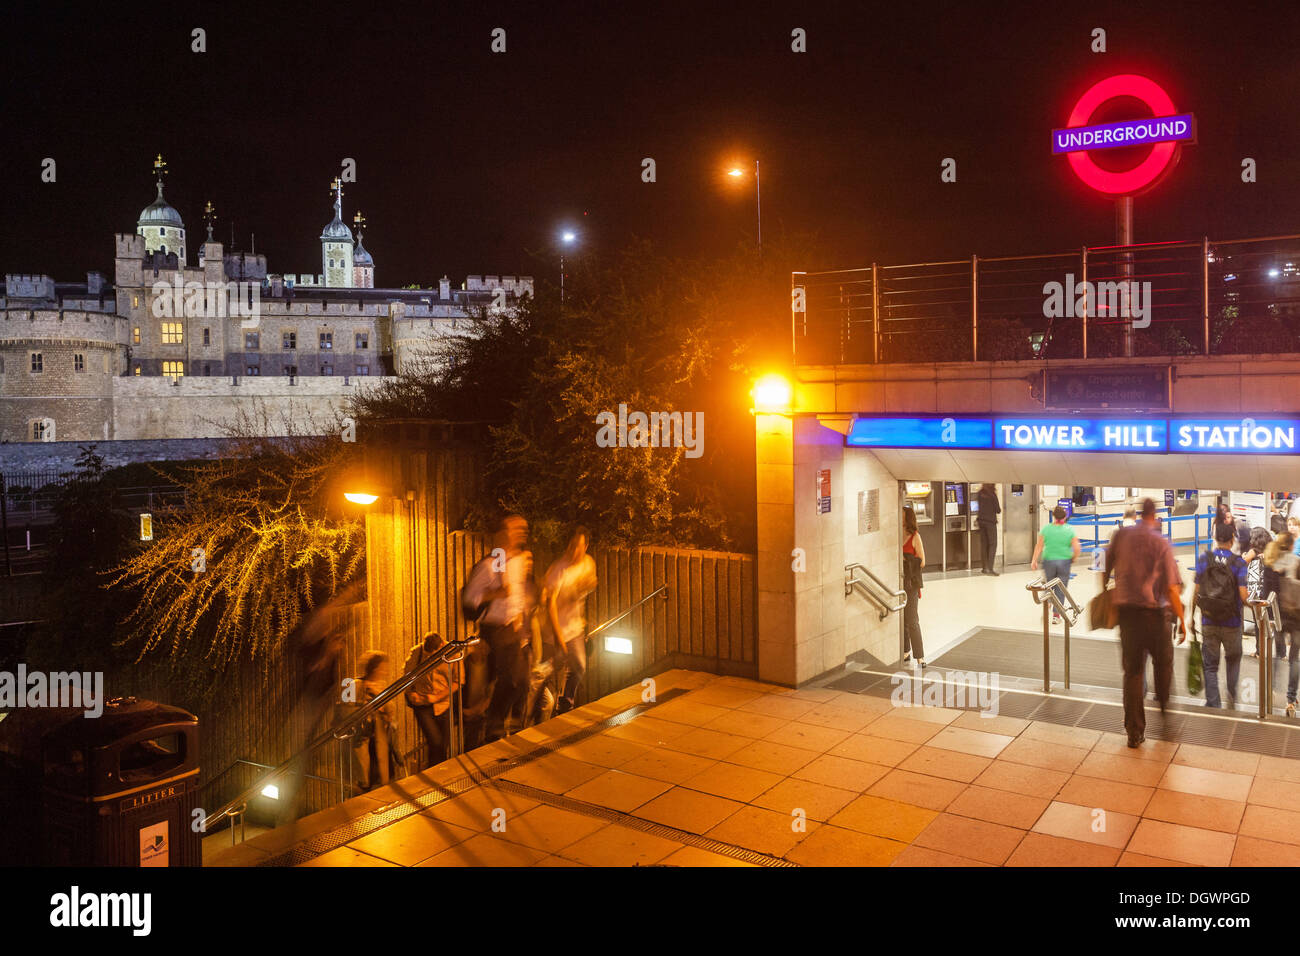 Tower Hill Station, un undergrouind railway station, la Tour de Londres la nuit, Londres, Angleterre, Royaume-Uni, Europe Banque D'Images